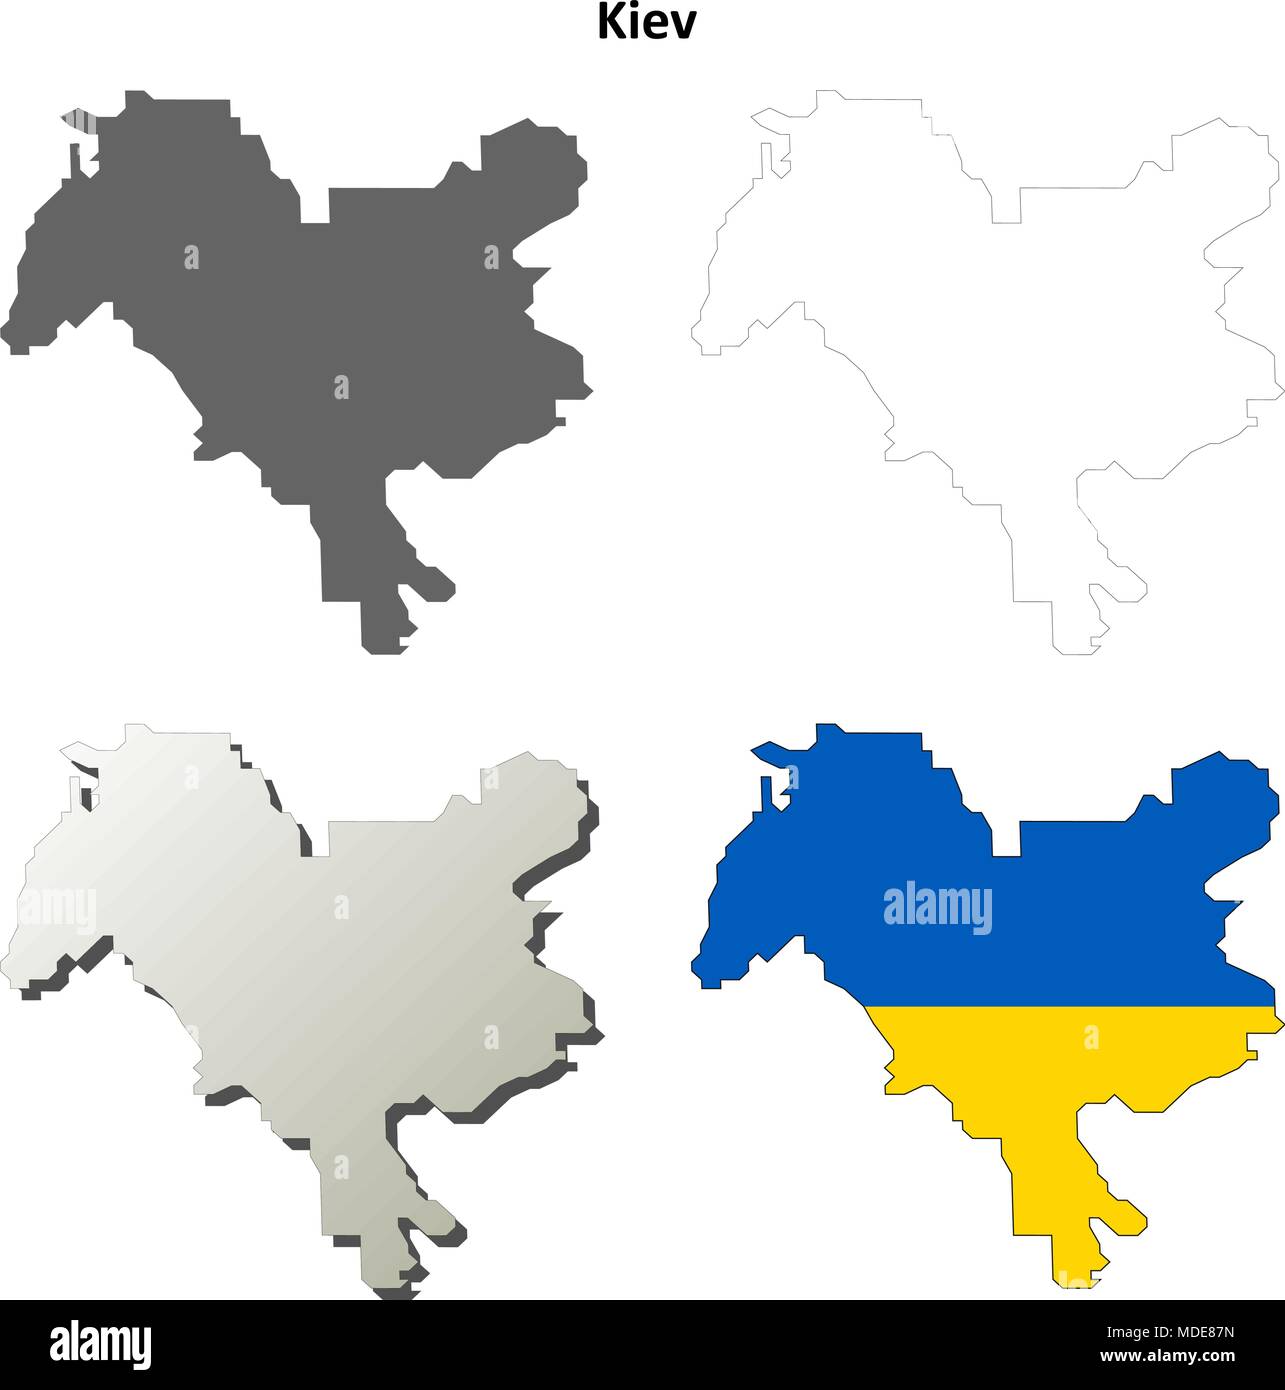 Kiew Stadt leer Umriss Karte gesetzt Stock Vektor